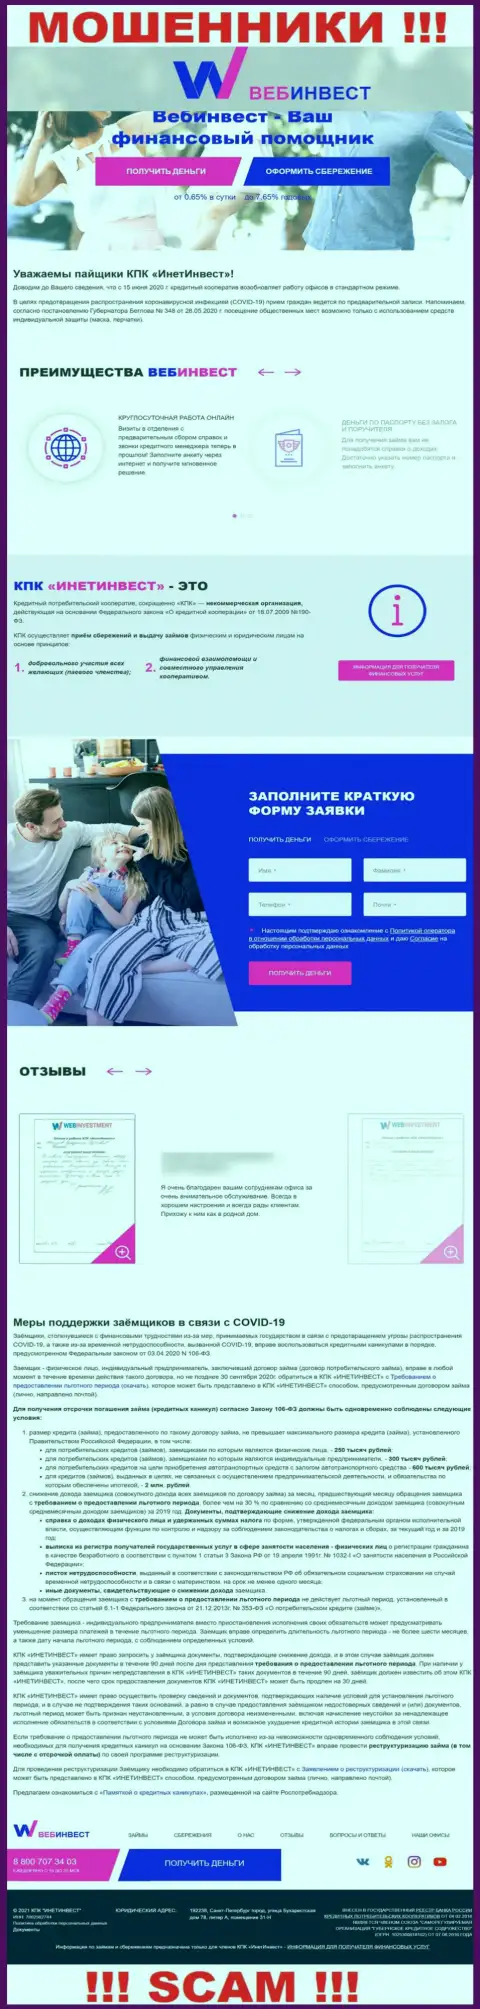 WebInvestment Ru - официальный web-сайт интернет-мошенников Web Investment